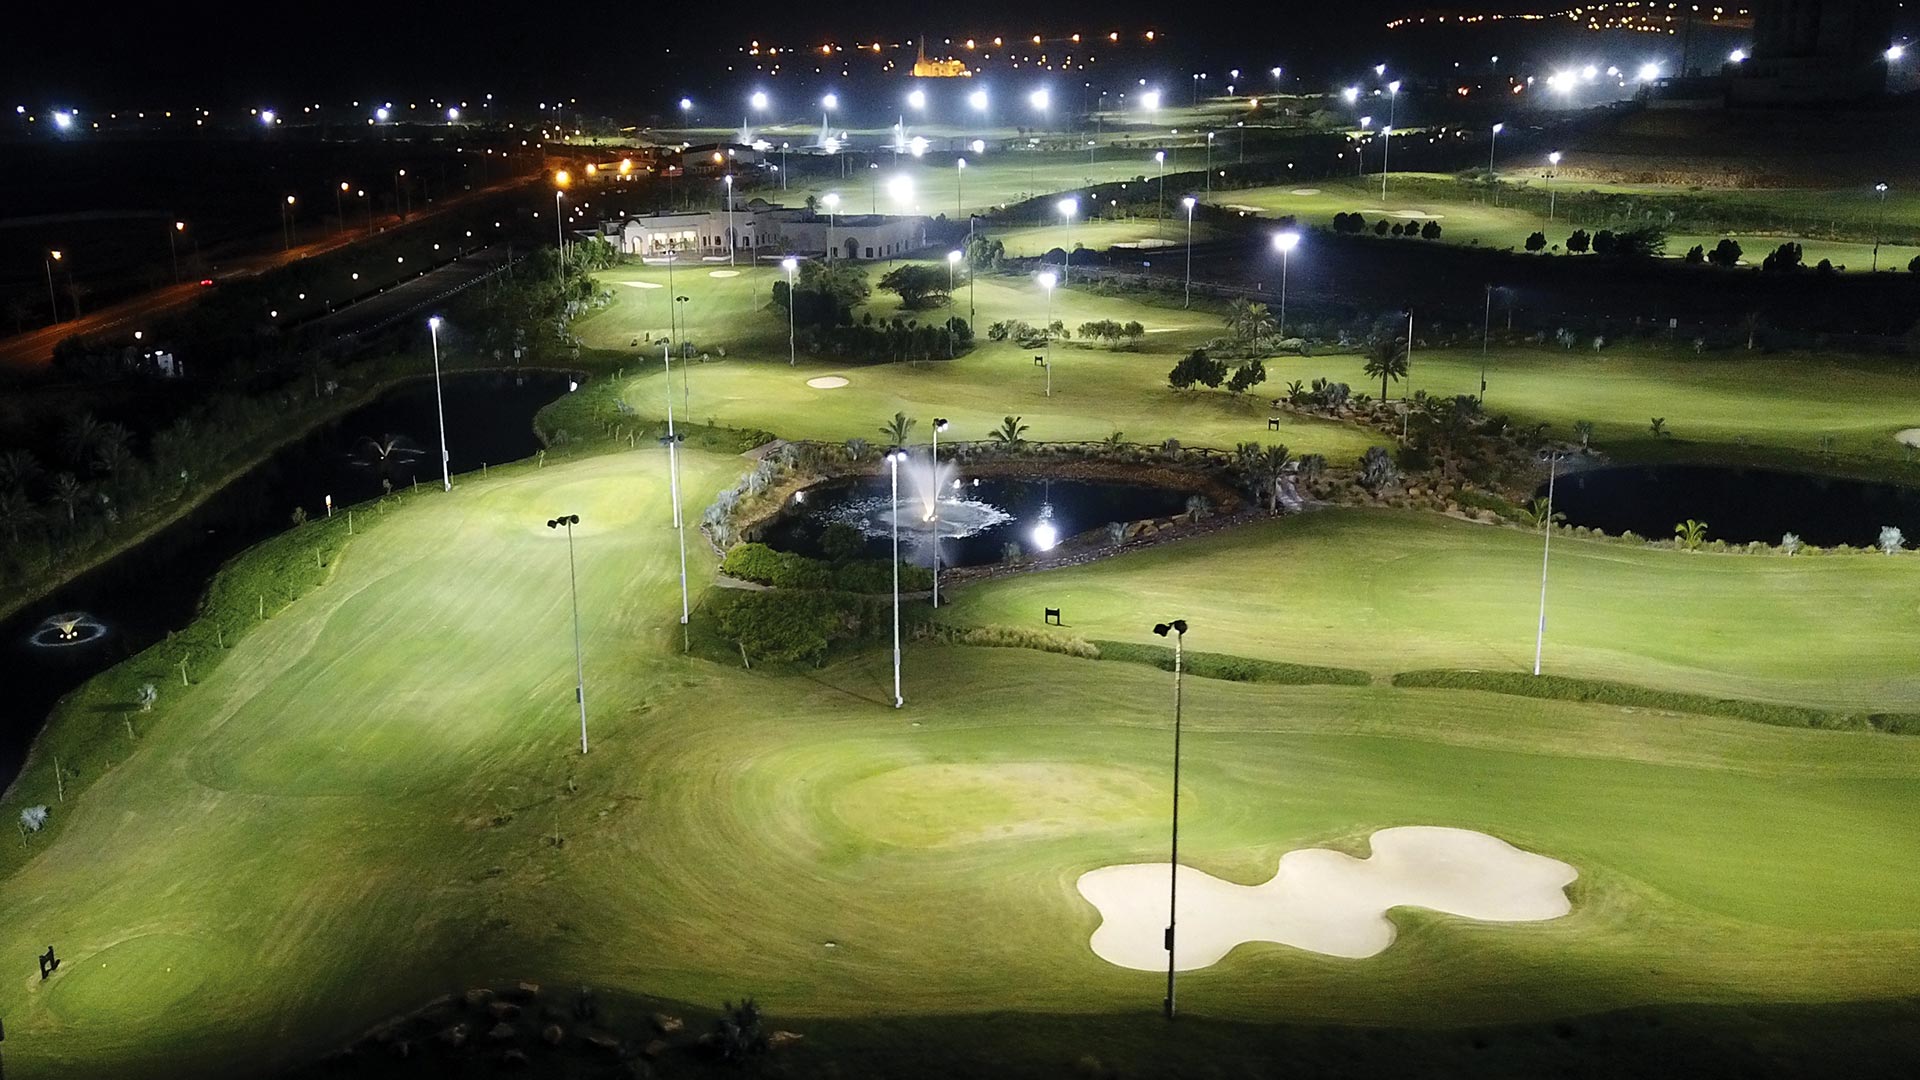 Bahria Golf City Karachi